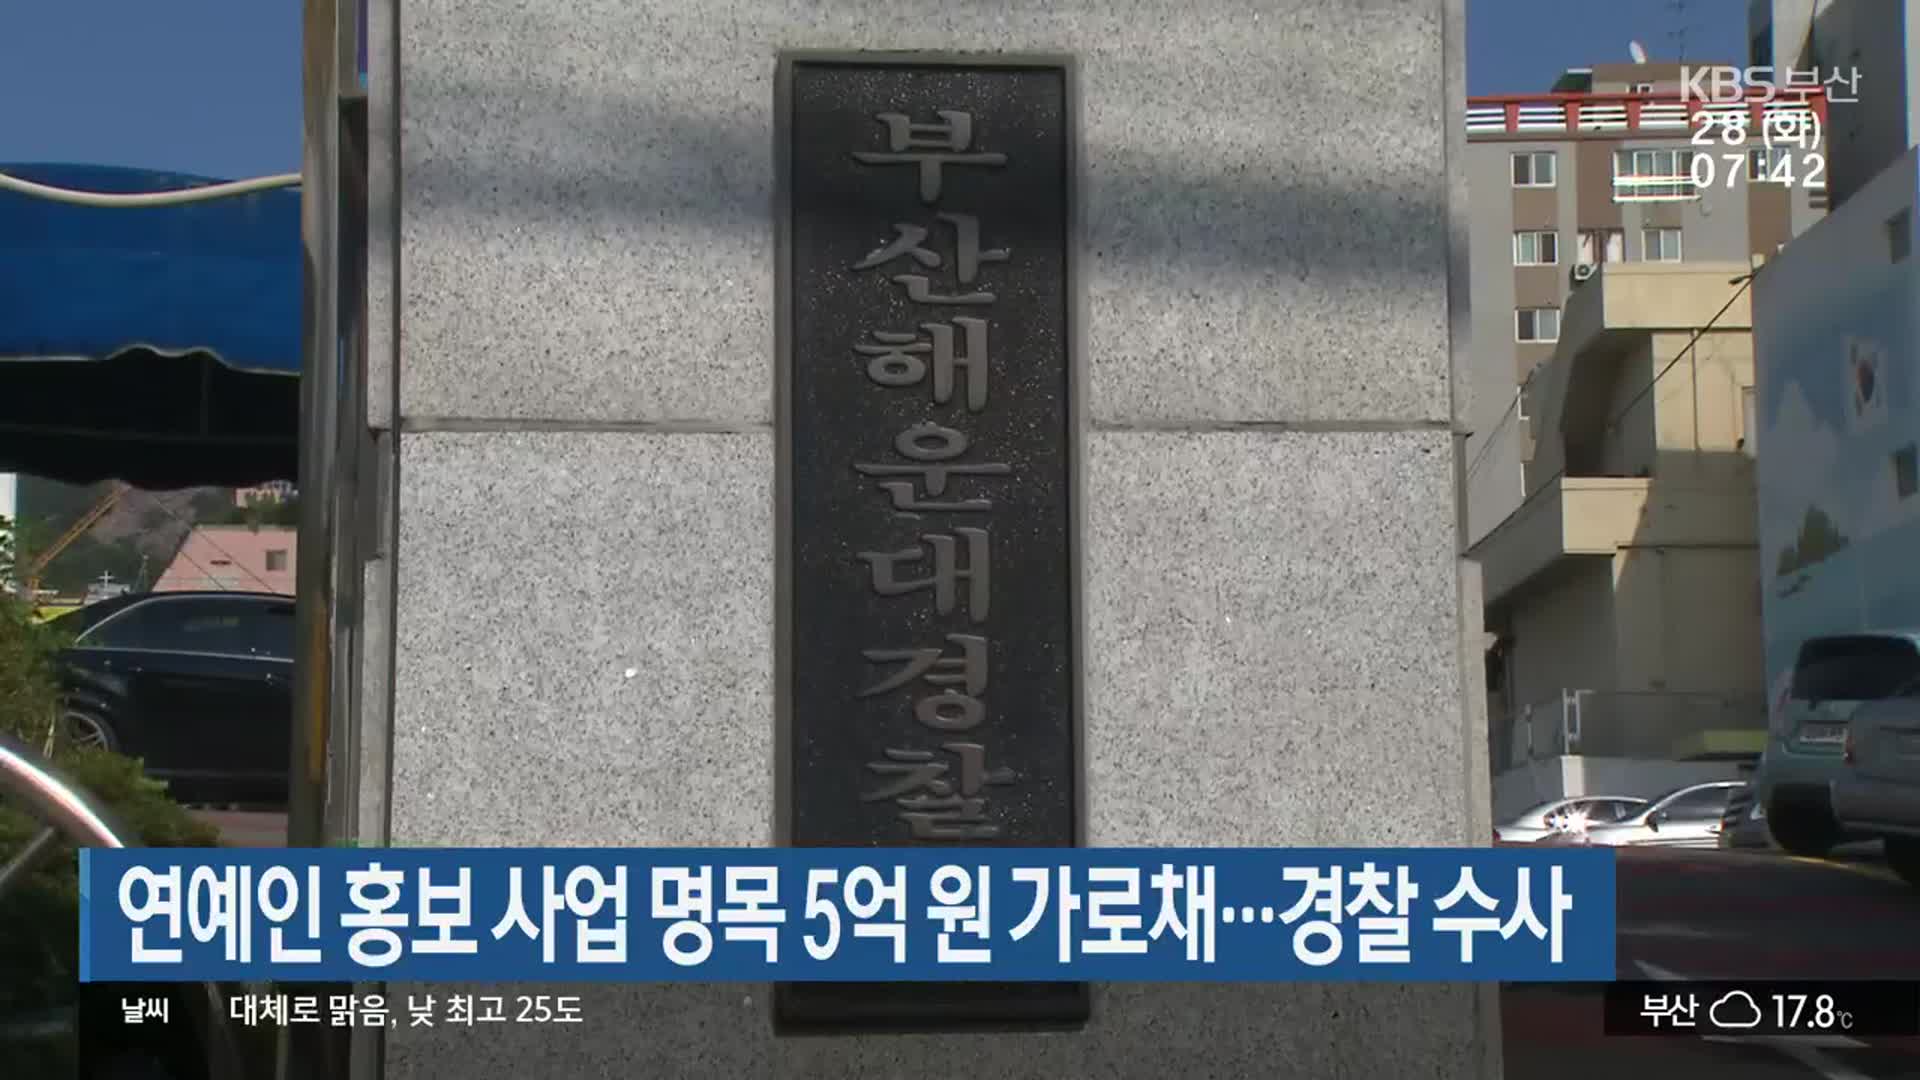 연예인 홍보 사업 명목 5억 원 가로채…경찰 수사